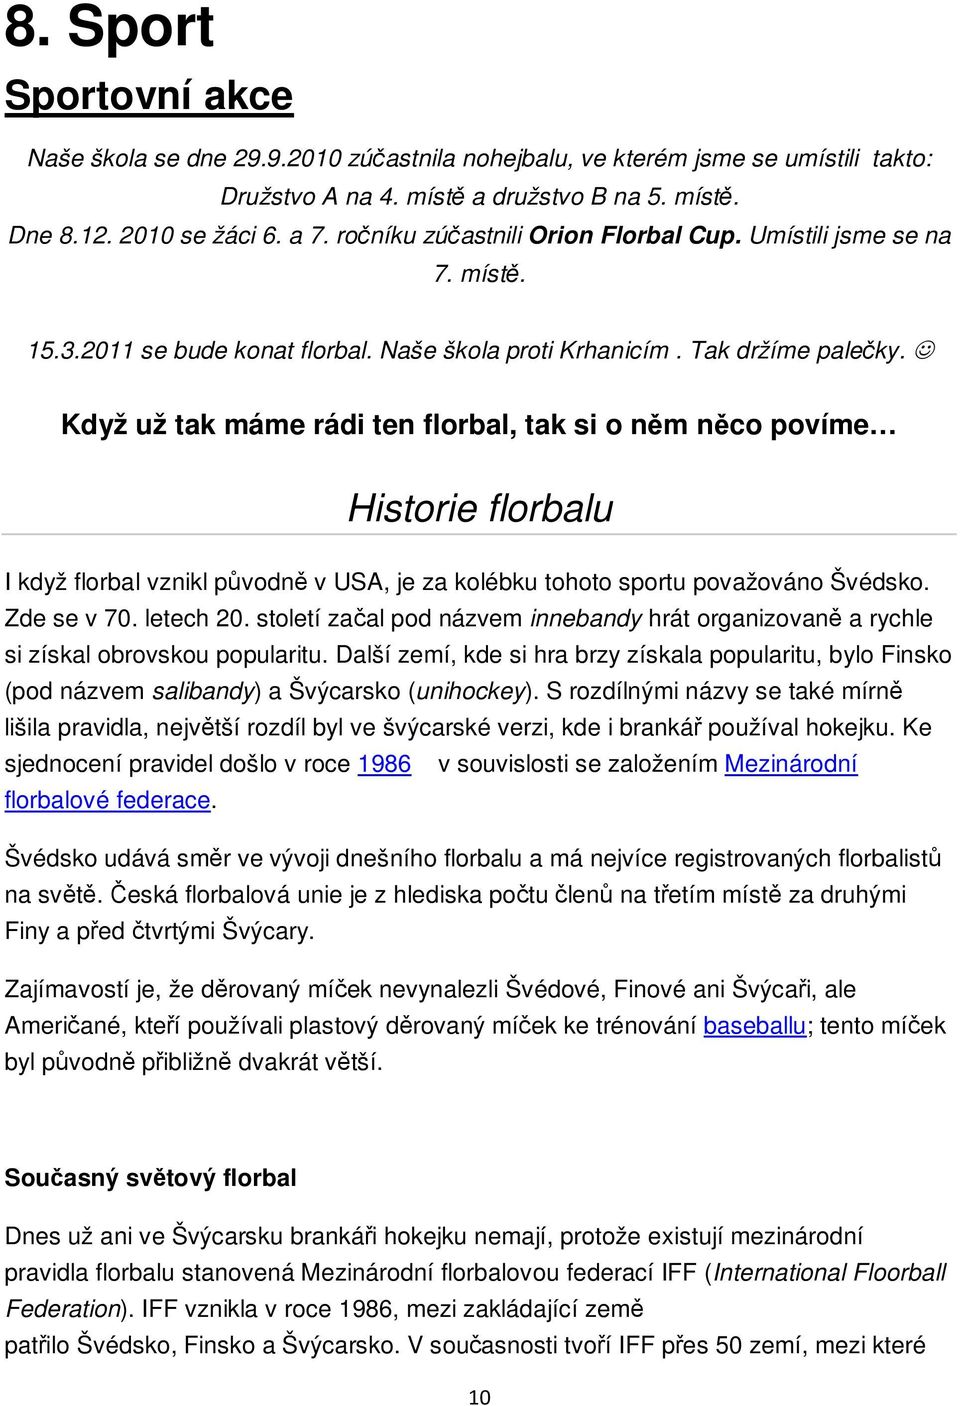 Když už tak máme rádi ten florbal, tak si o nm nco povíme Historie florbalu I když florbal vznikl pvodn v USA, je za kolébku tohoto sportu považováno Švédsko. Zde se v 70. letech 20.